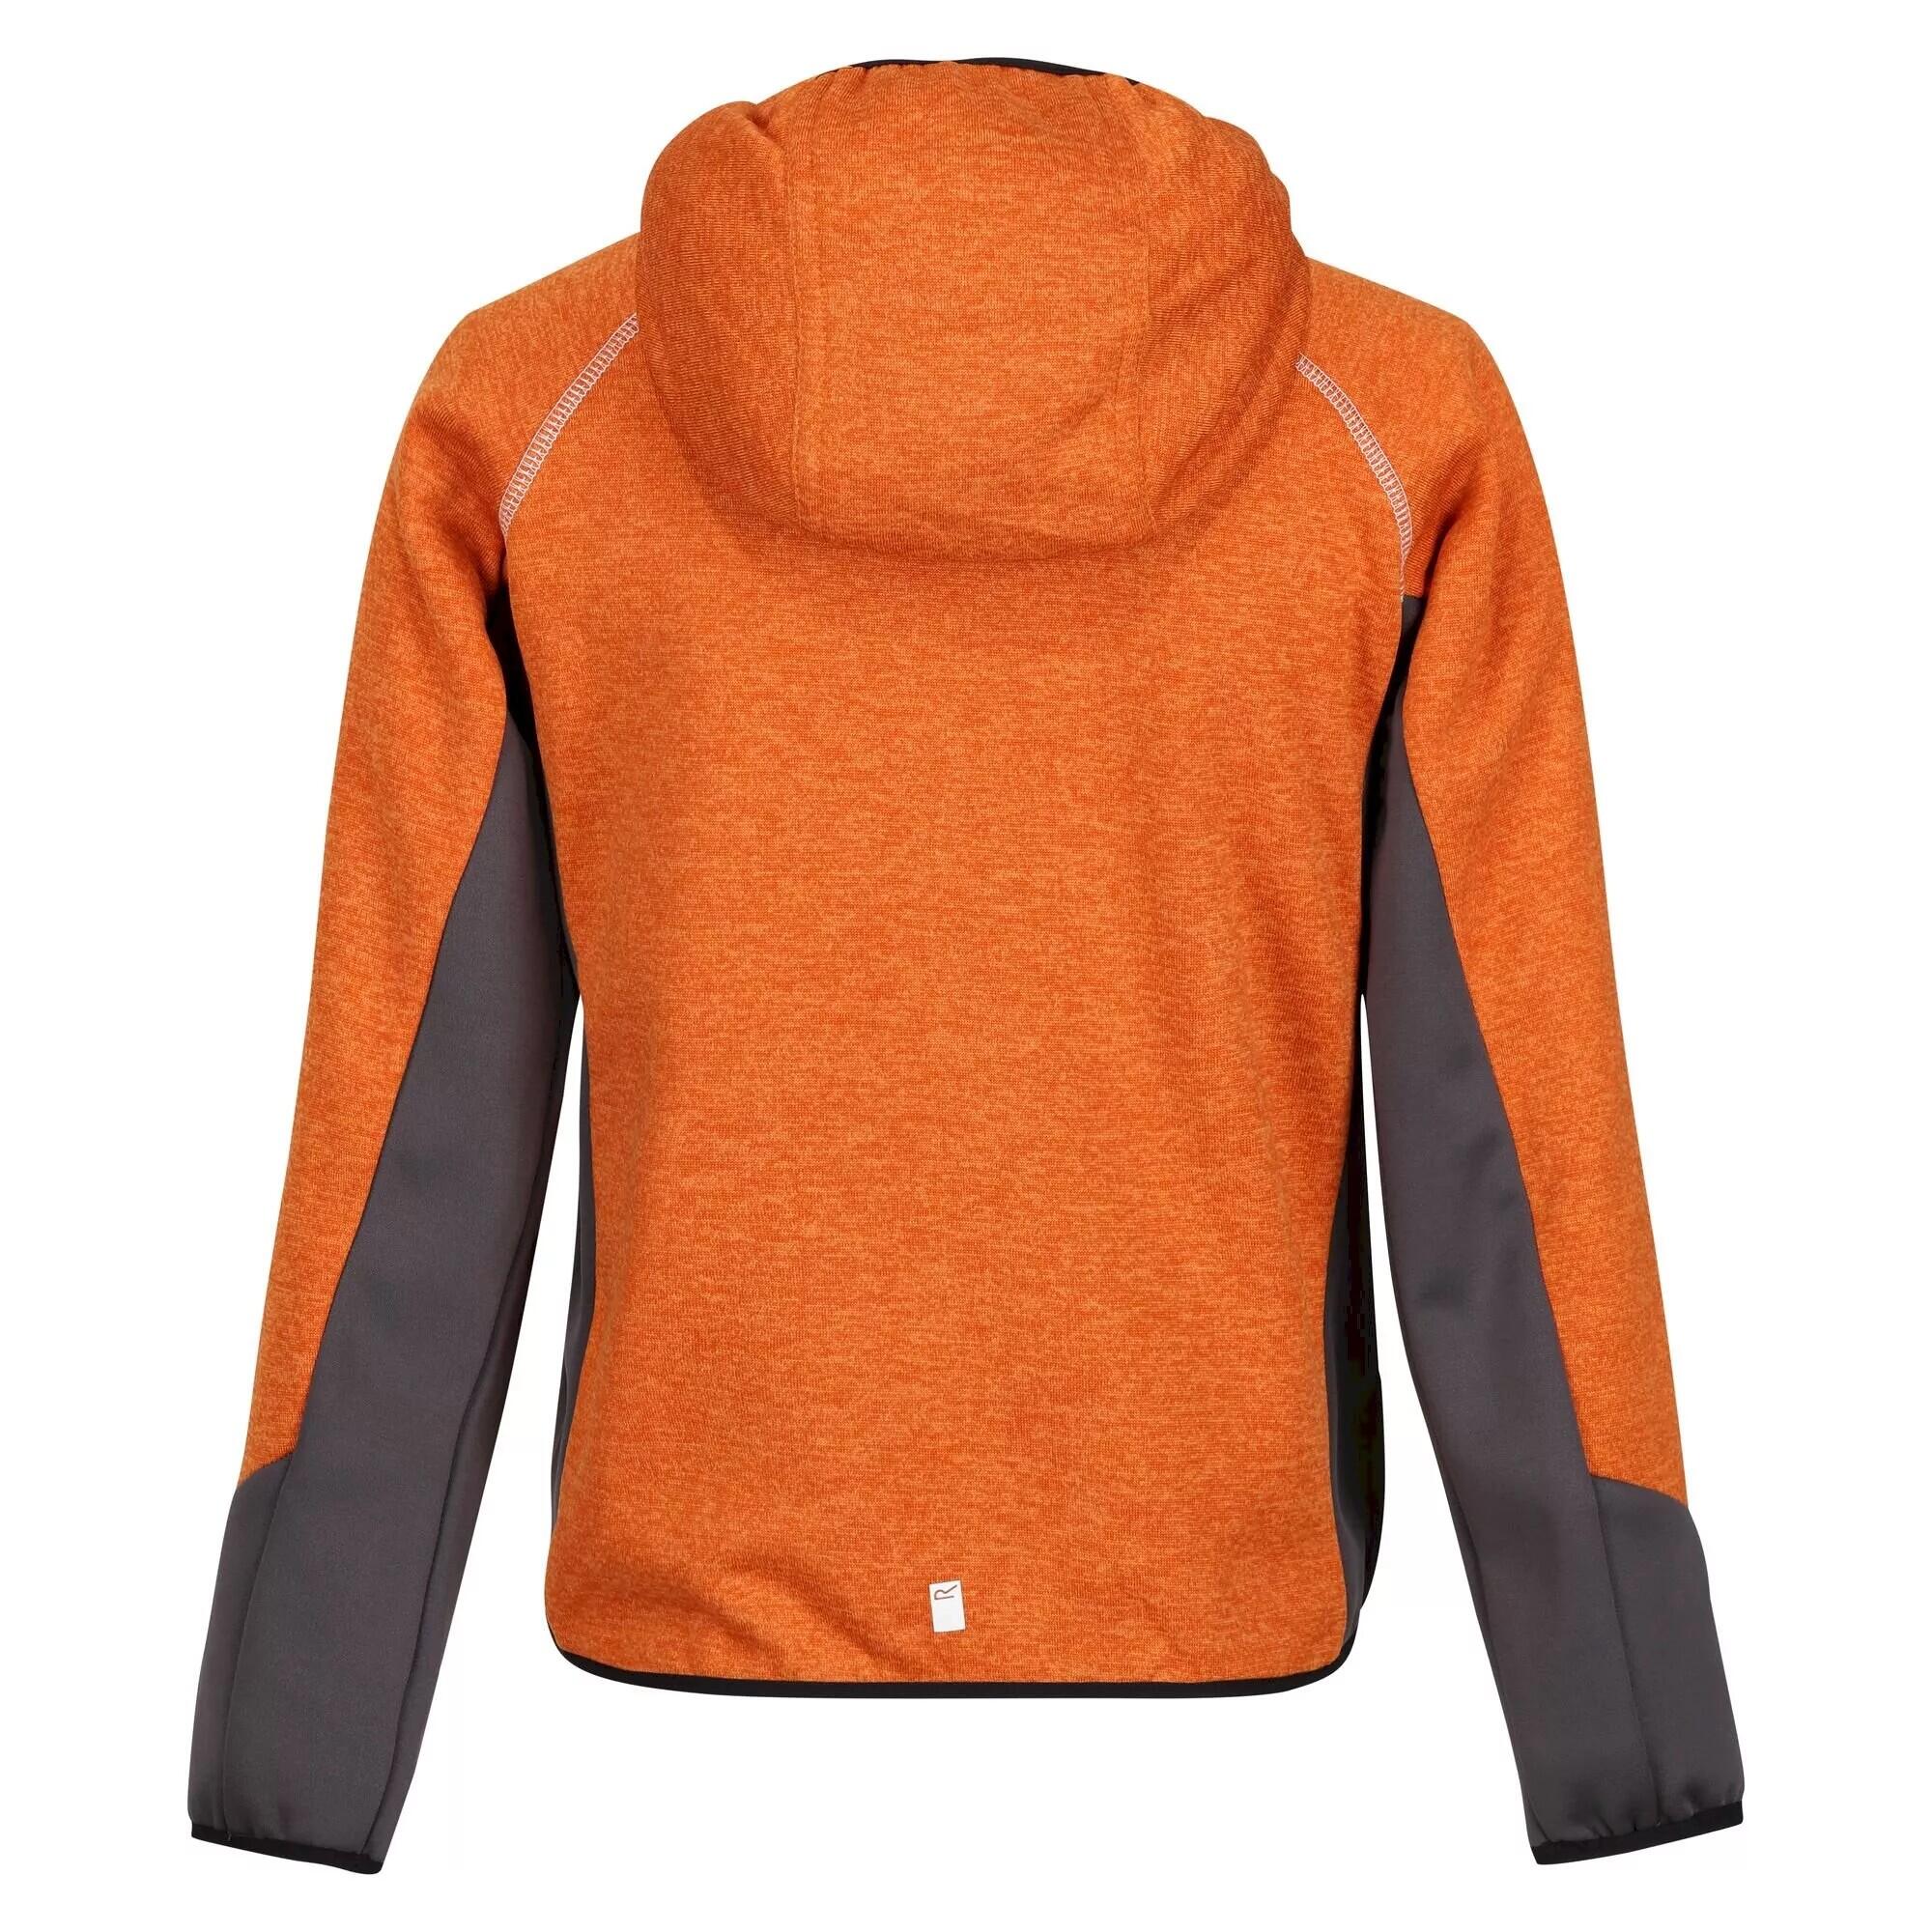 Childrens/Kids Prenton Lightweight Fleece Jacket (Autumn Maple/Dark Grey) 2/5